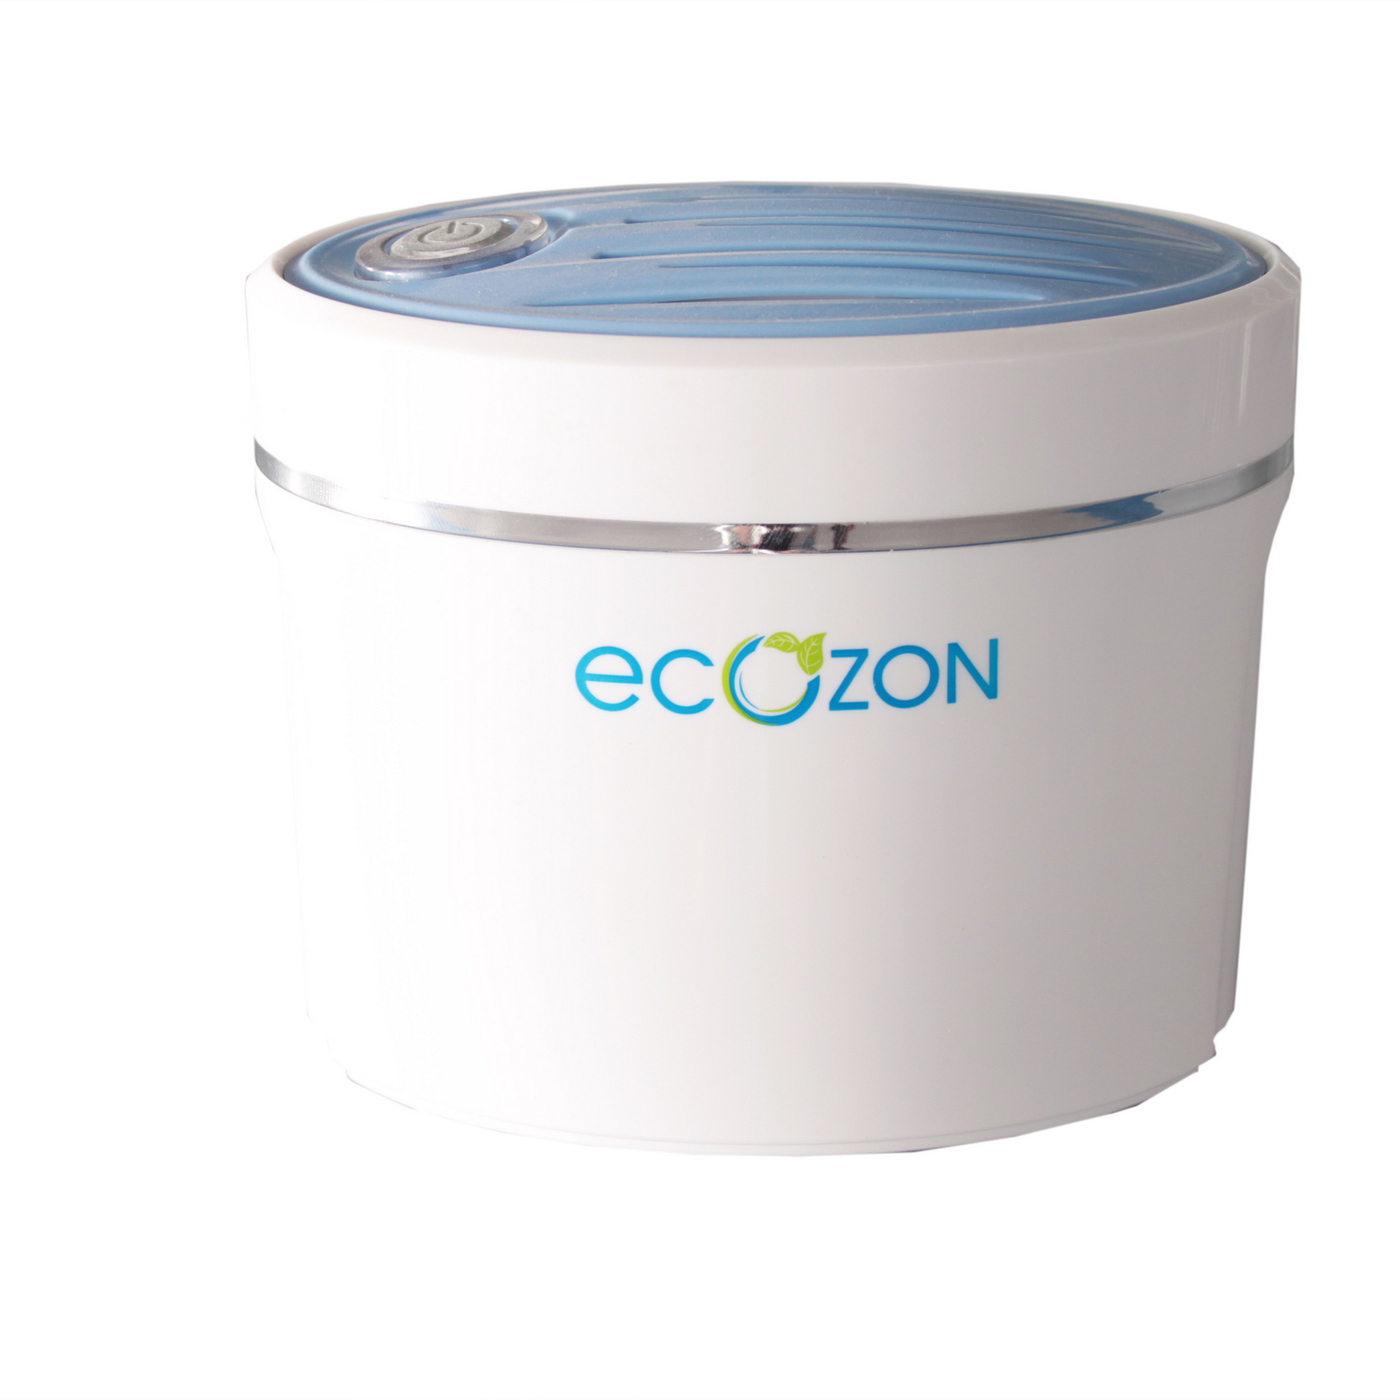 Озонатор для холодильника. Ecozon озонаторы. Озонатор Ecozon r1 для холодильников. Озонатор для продуктов погружной. Экозон 3 воздушный.